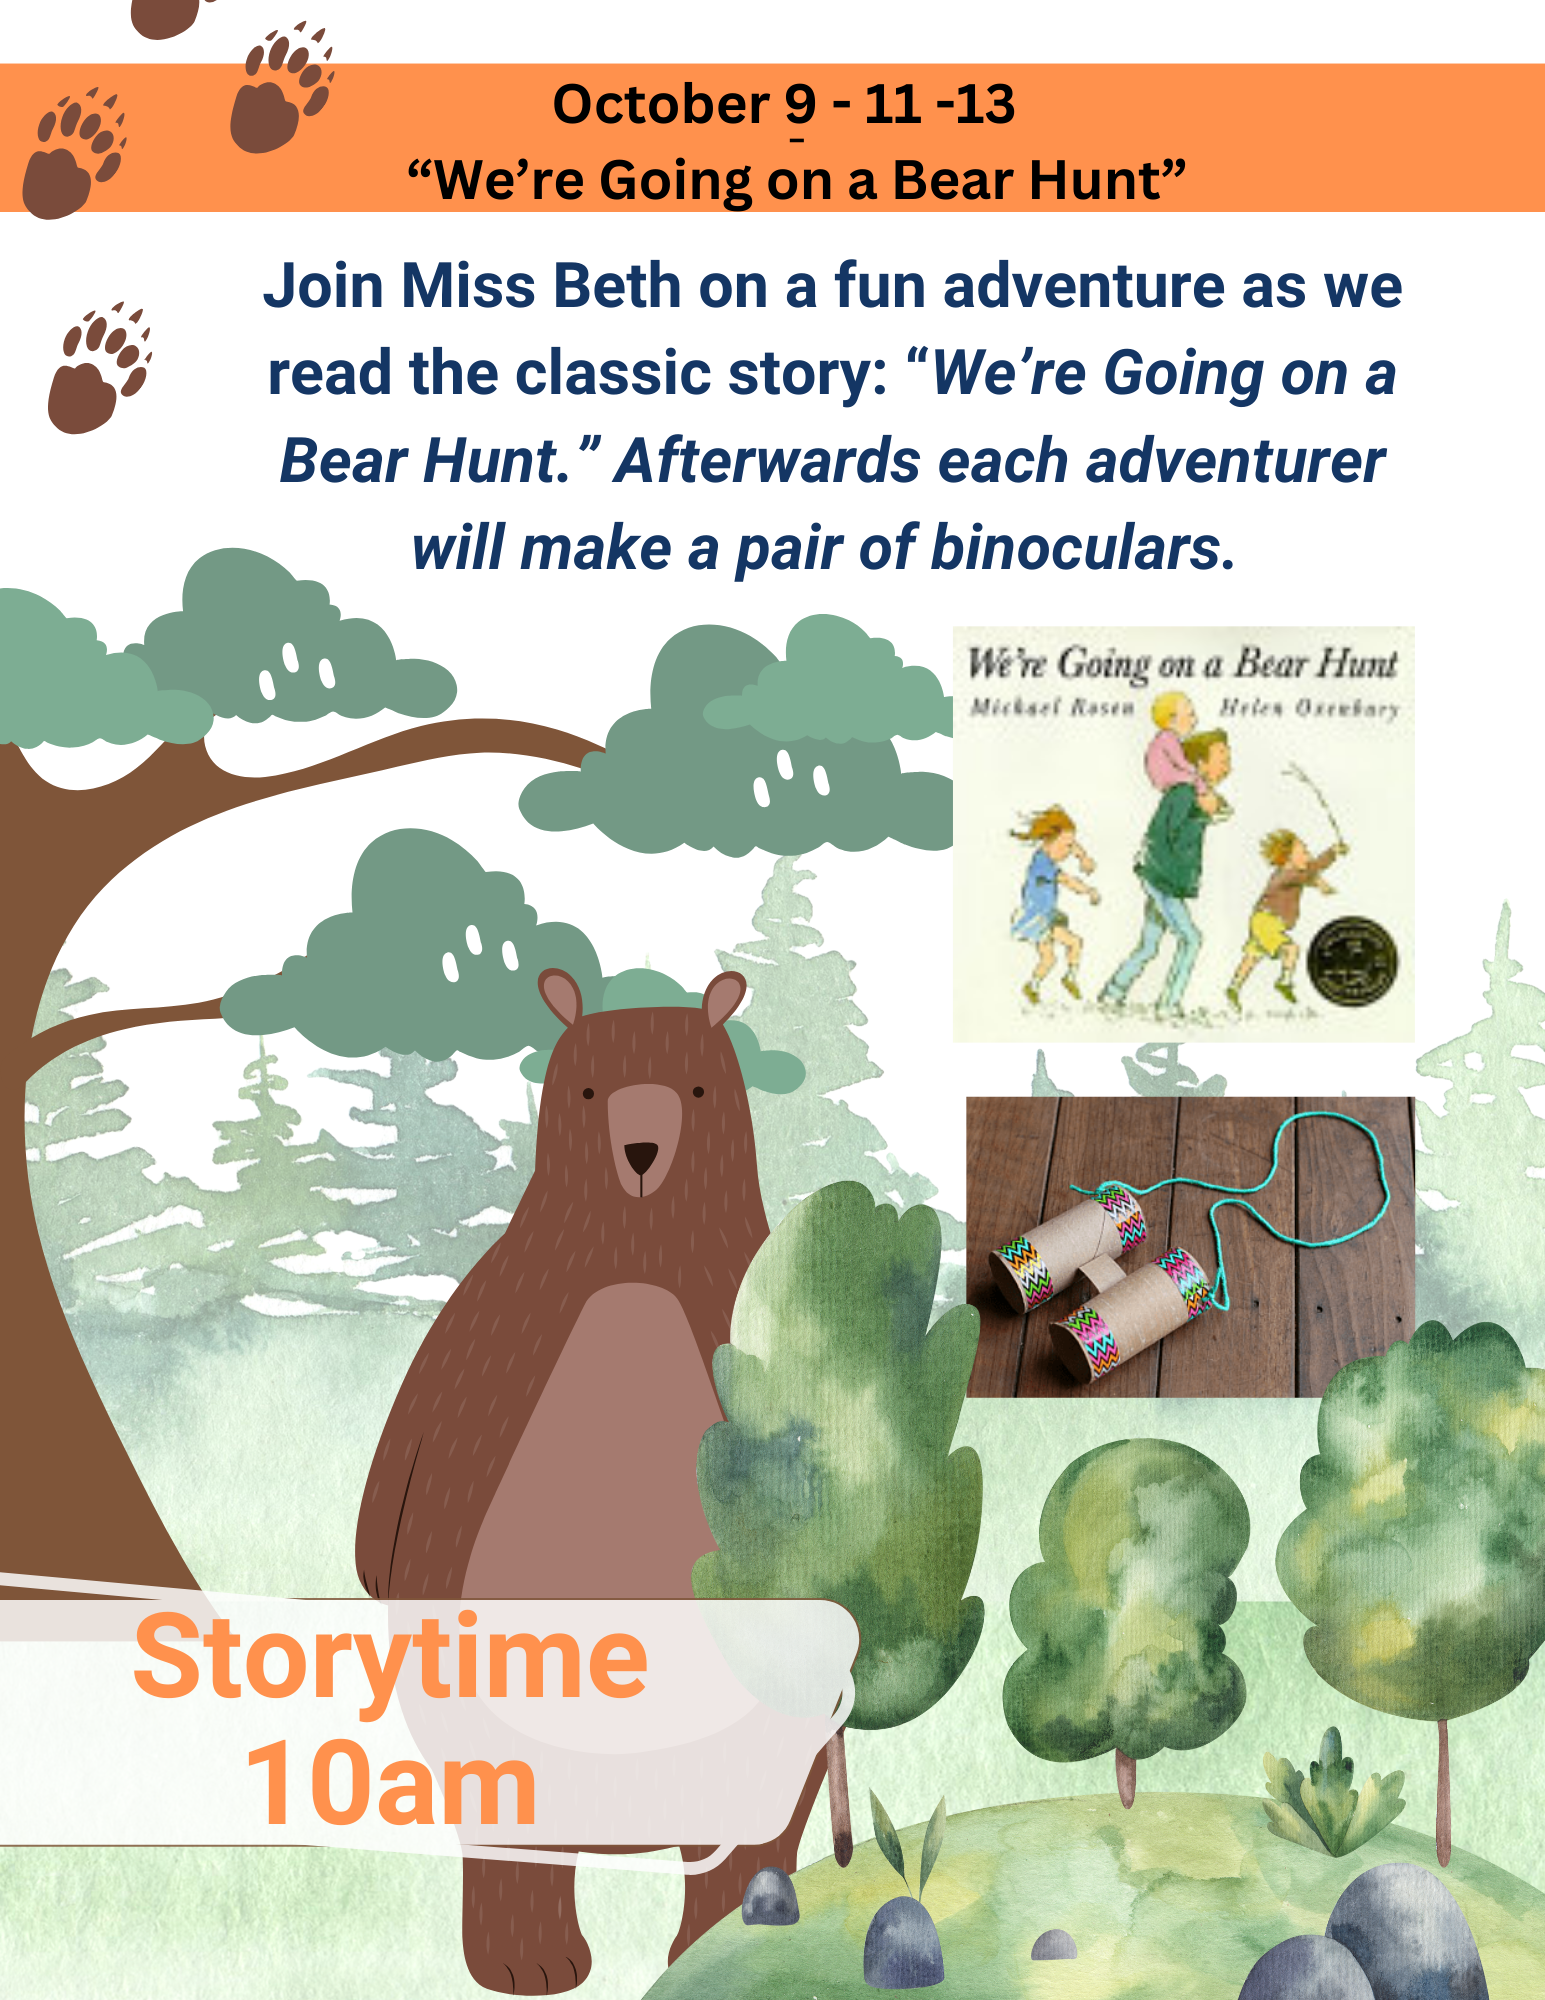 Going on Bear Hunt Storytime